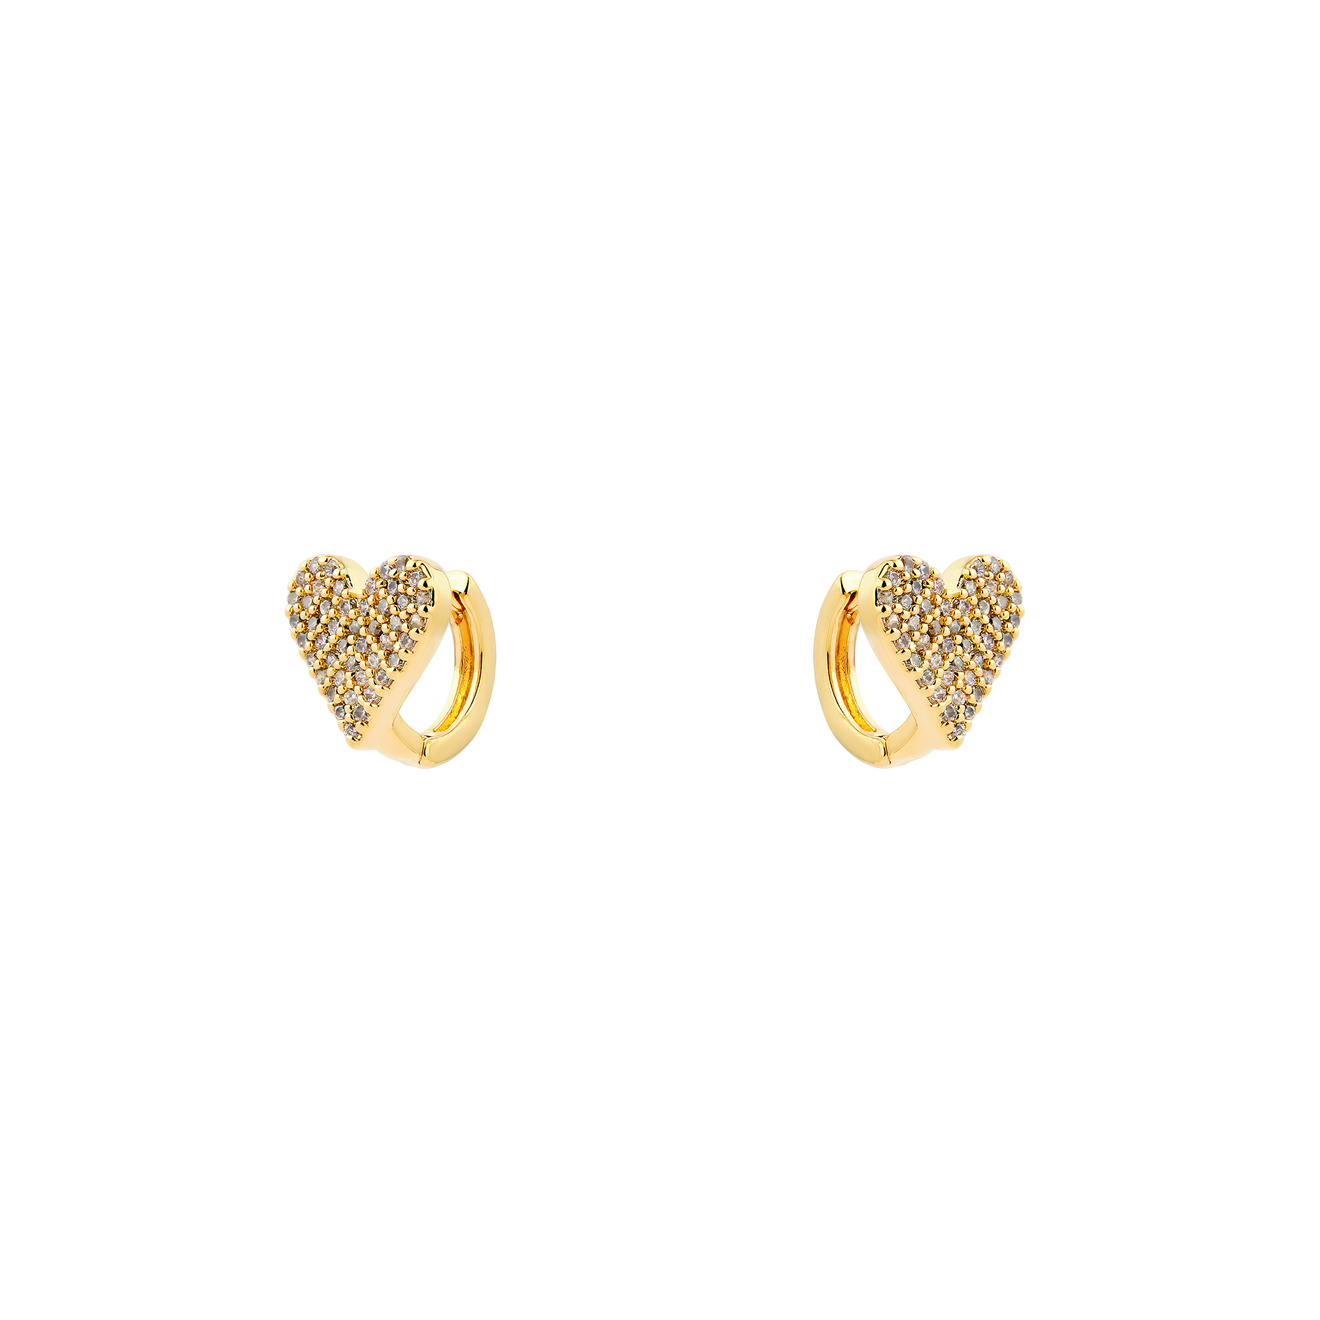 Free Form Jewelry Золотистые серьги в форме сердечка с паве из кристаллов и шариками